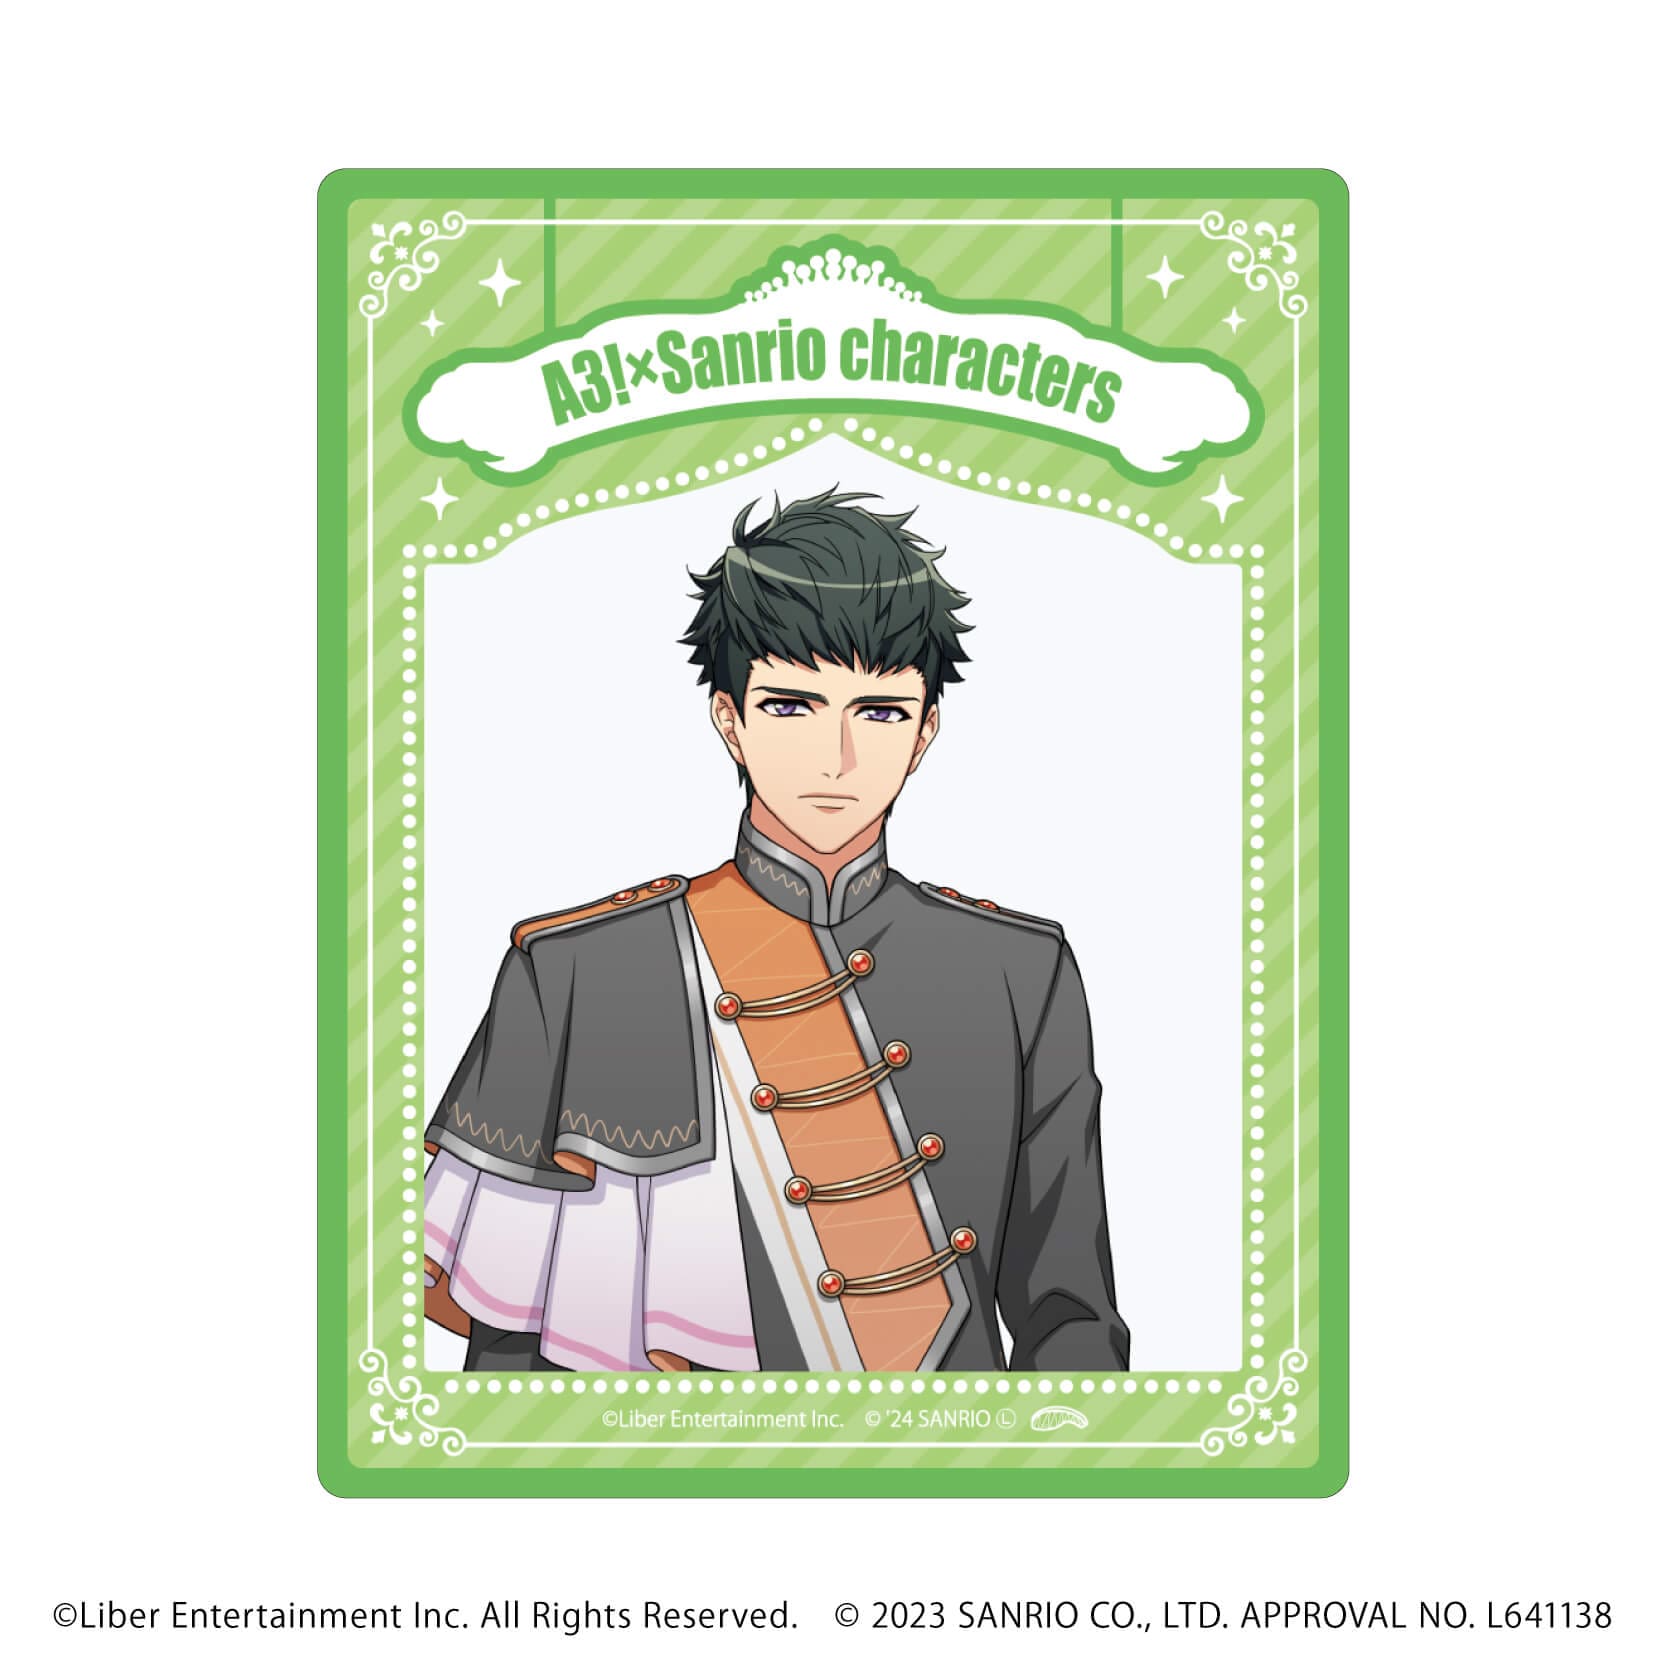 アクリルカード「A3!×Sanrio characters」08/A＆W コンプリートBOX(全12種)(公式イラスト)